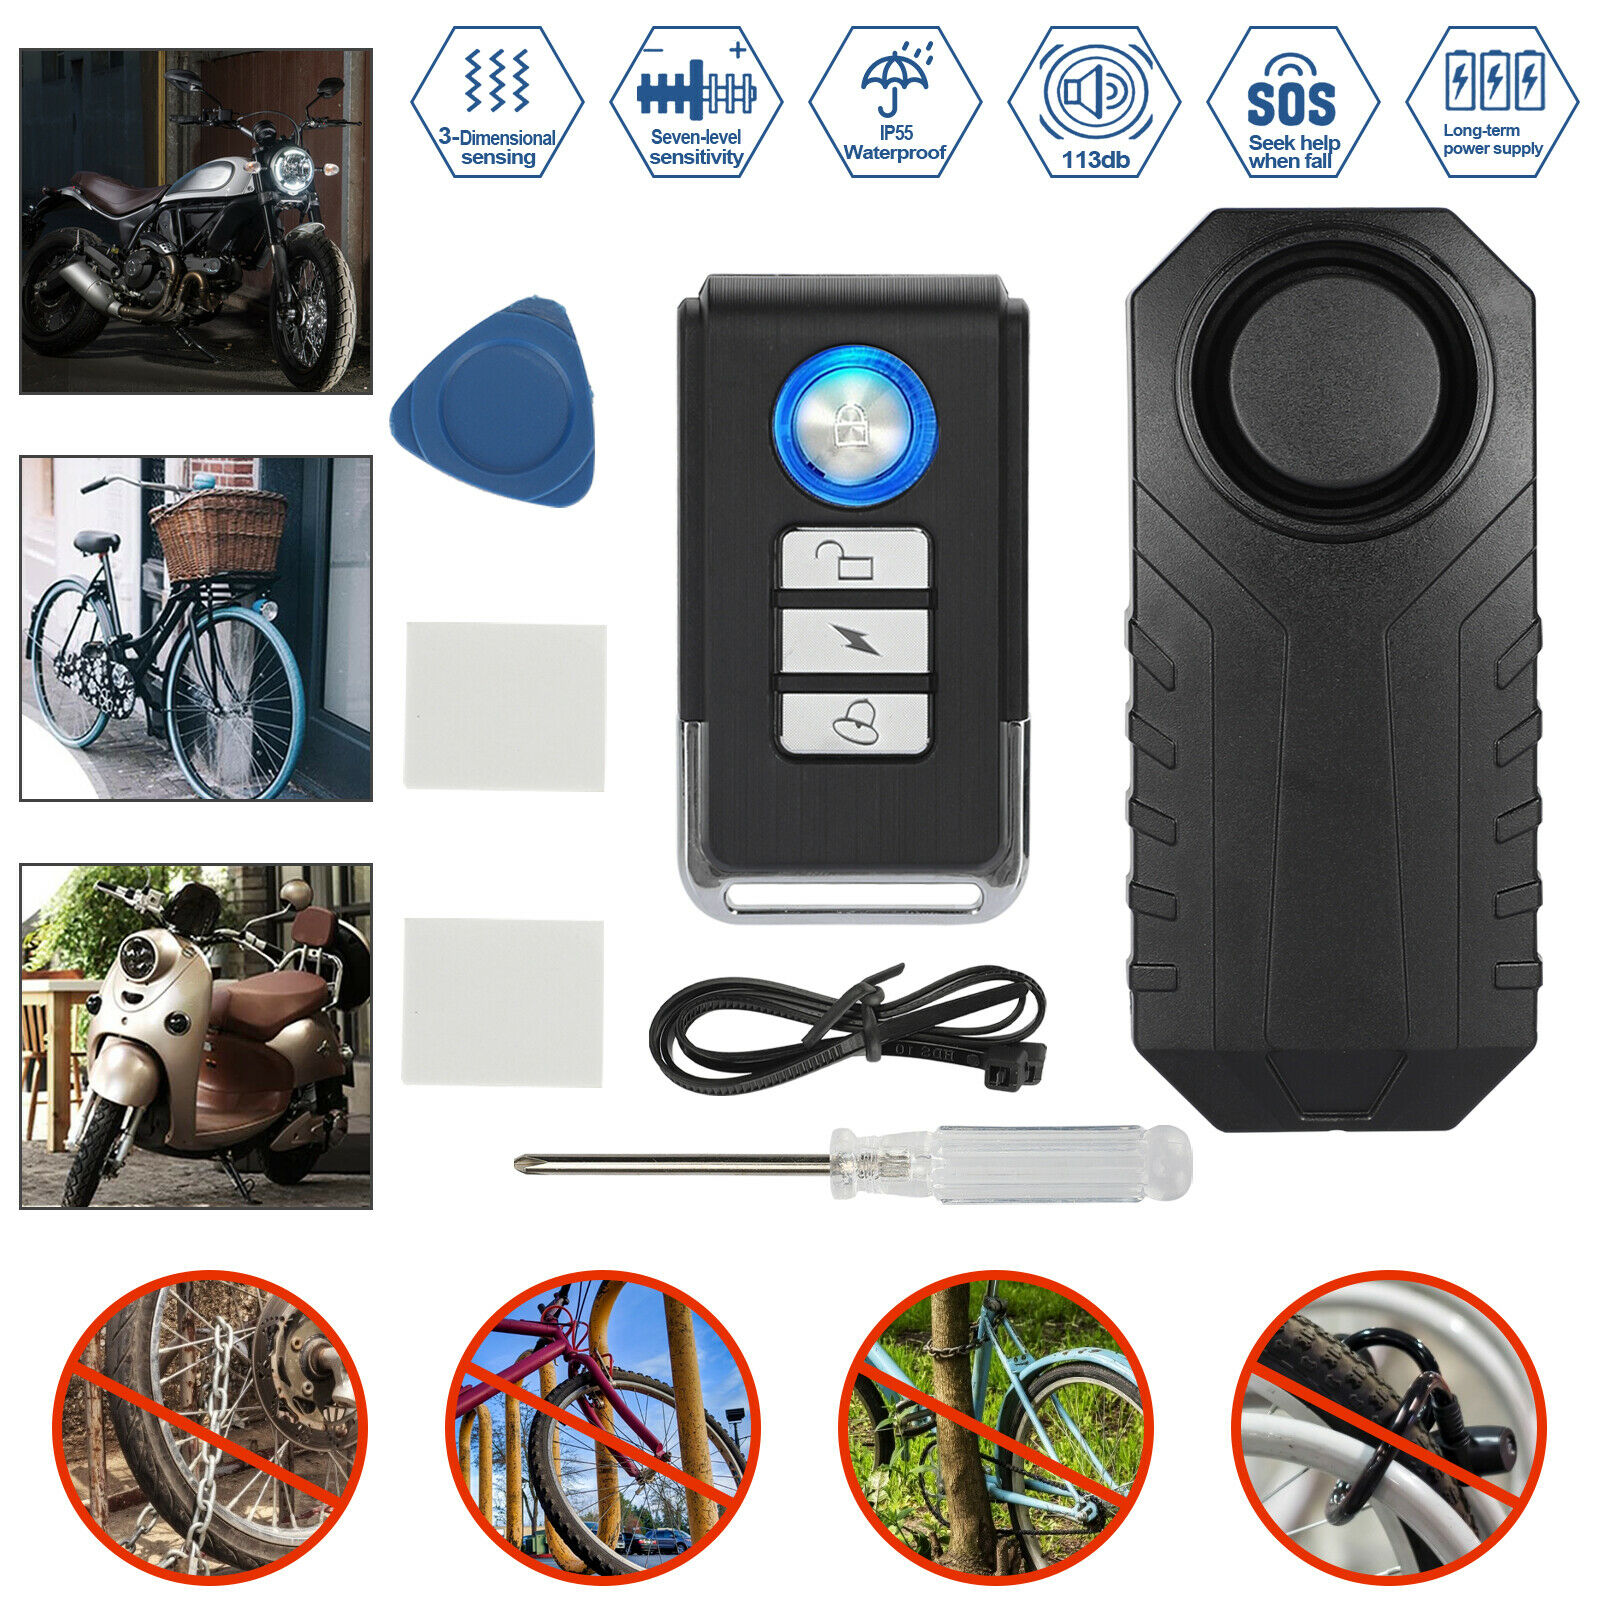 Alarme de sécurité Anti-vol pour moto et vélo, télécommande à vibrations, étanche, sans fil, 113db, pour voiture électrique